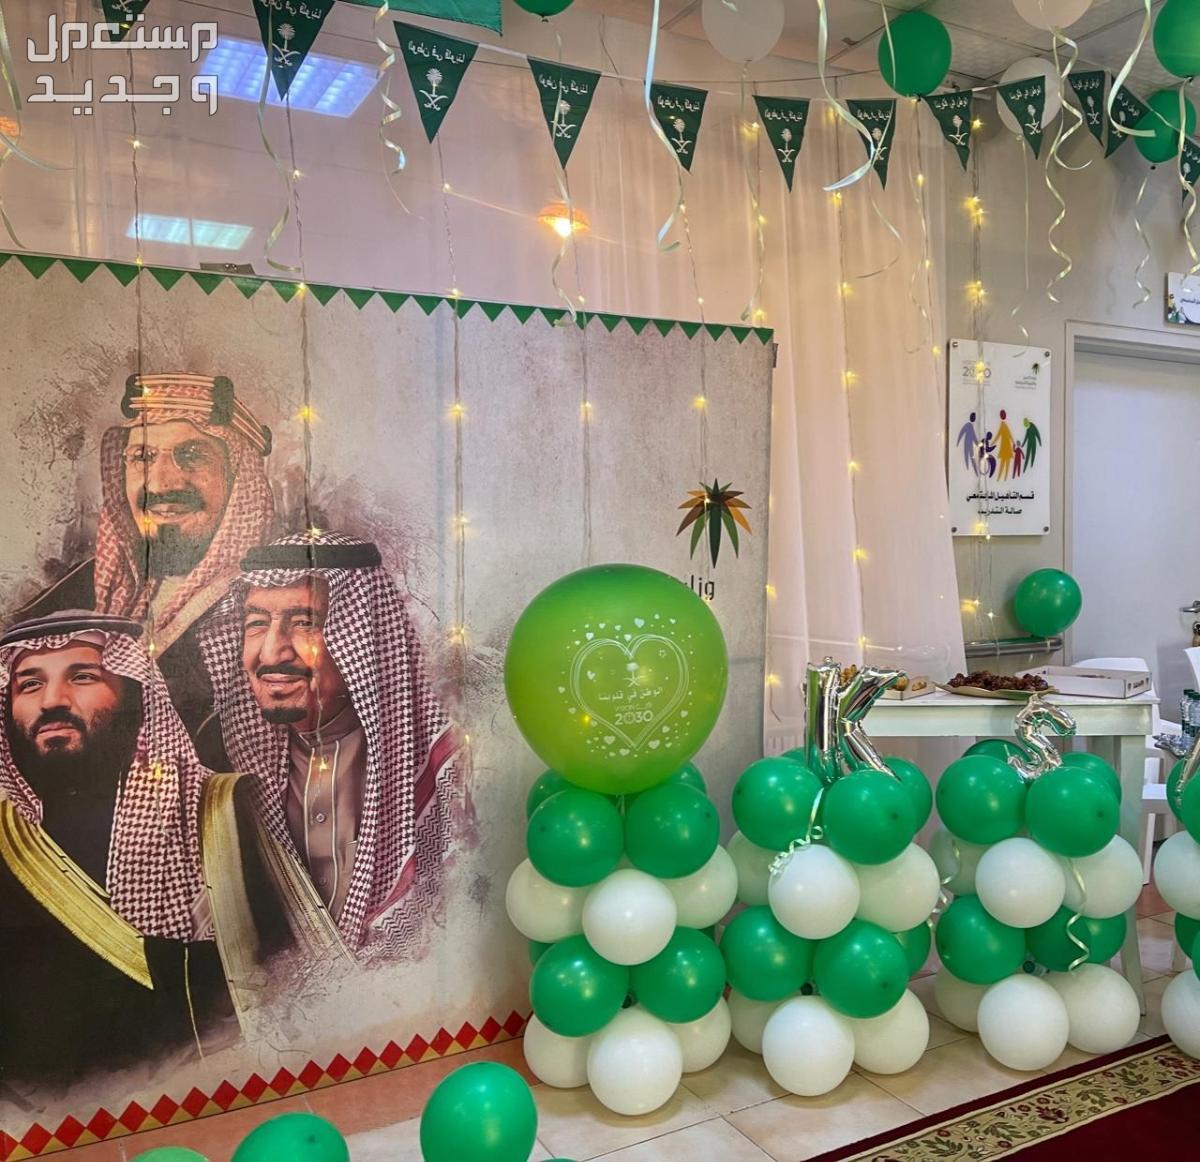 صور ديكورات داخلية بمناسبة اليوم الوطني السعودي 1445 في اليَمَن ديكورات داخلية بمناسبة اليوم الوطني